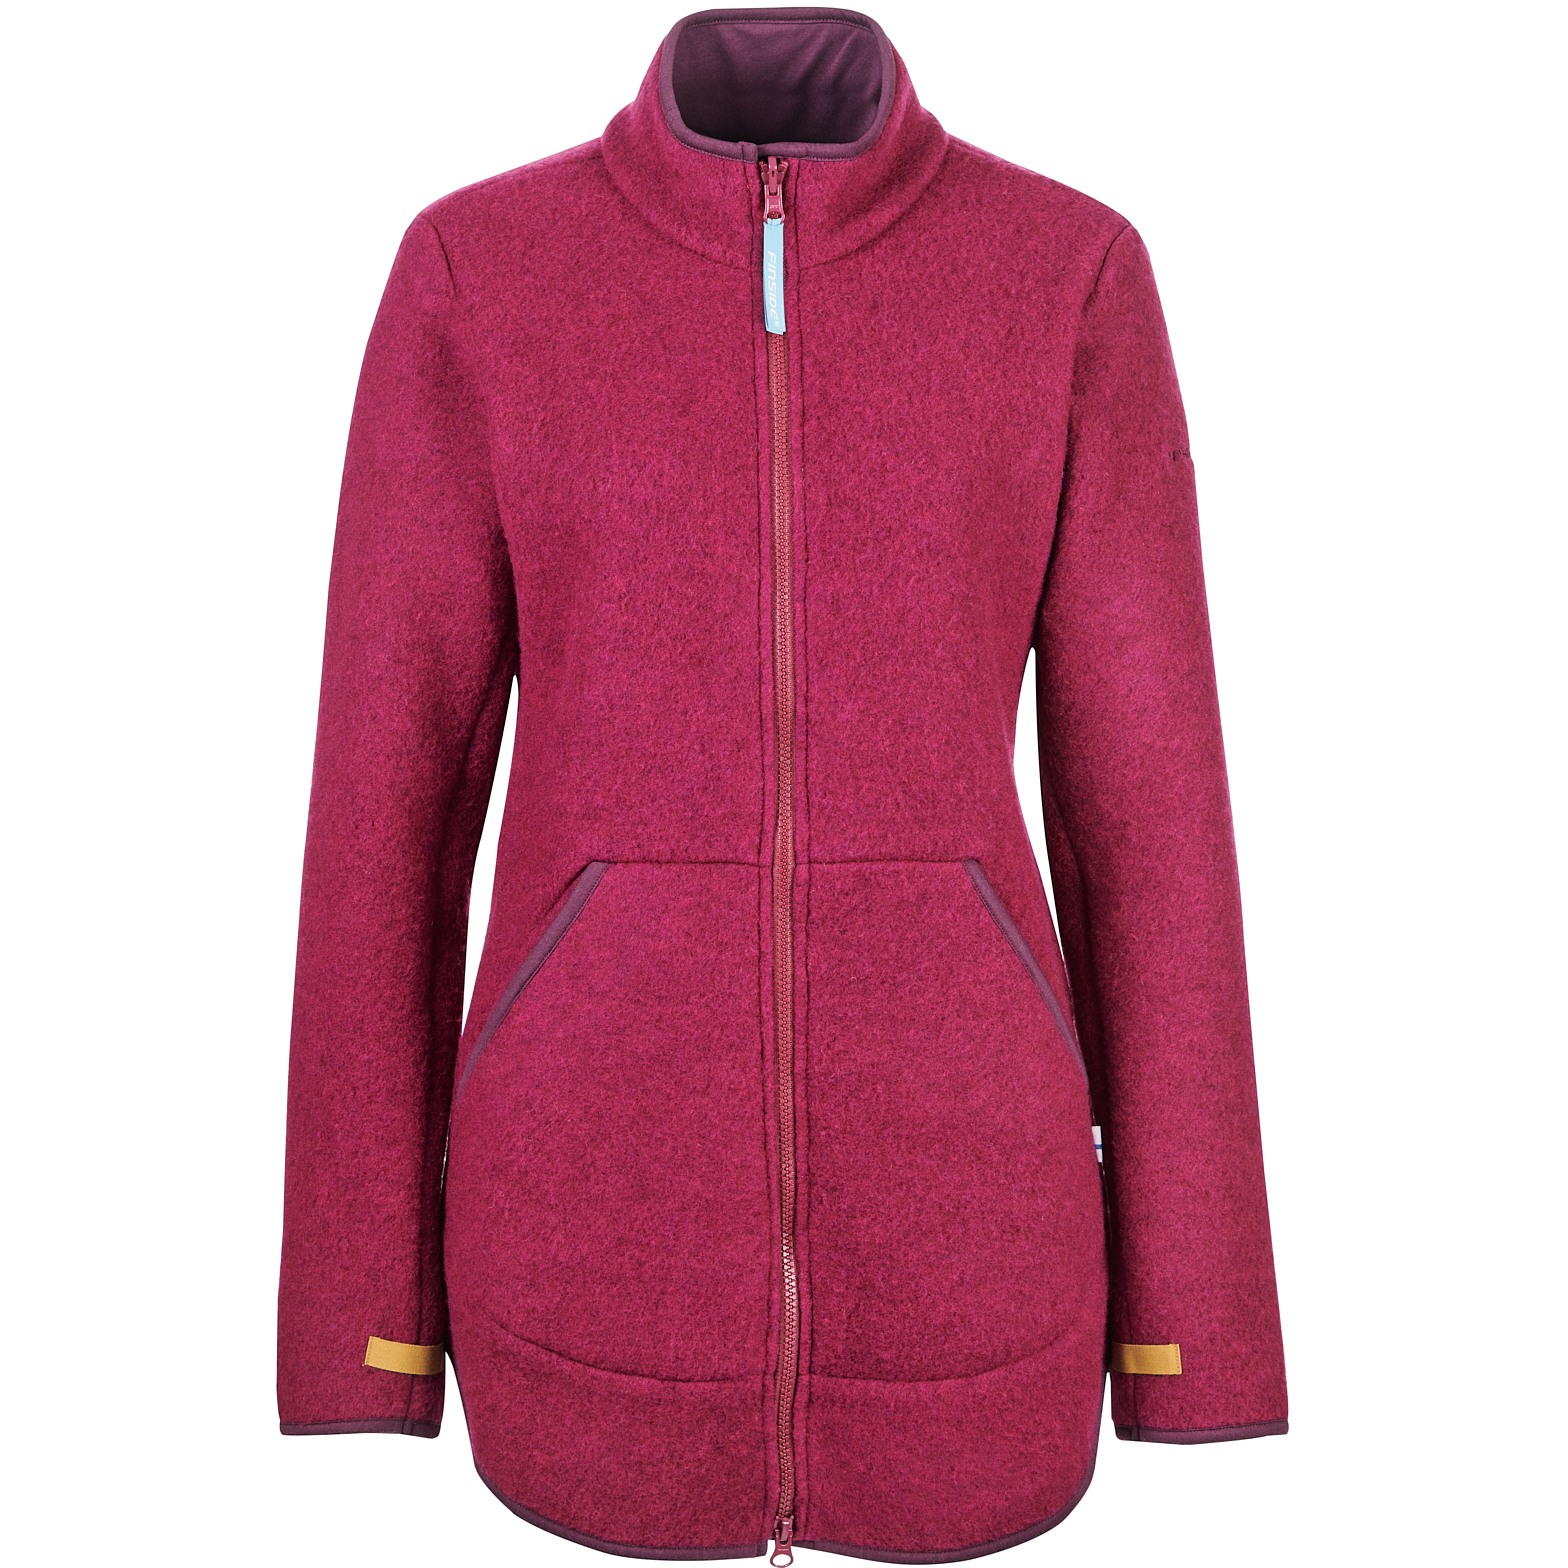 Picture of Finside MAATILA Zip-In Inner Jacket - Women Wool Fleece Jacket - beet red/eggplant